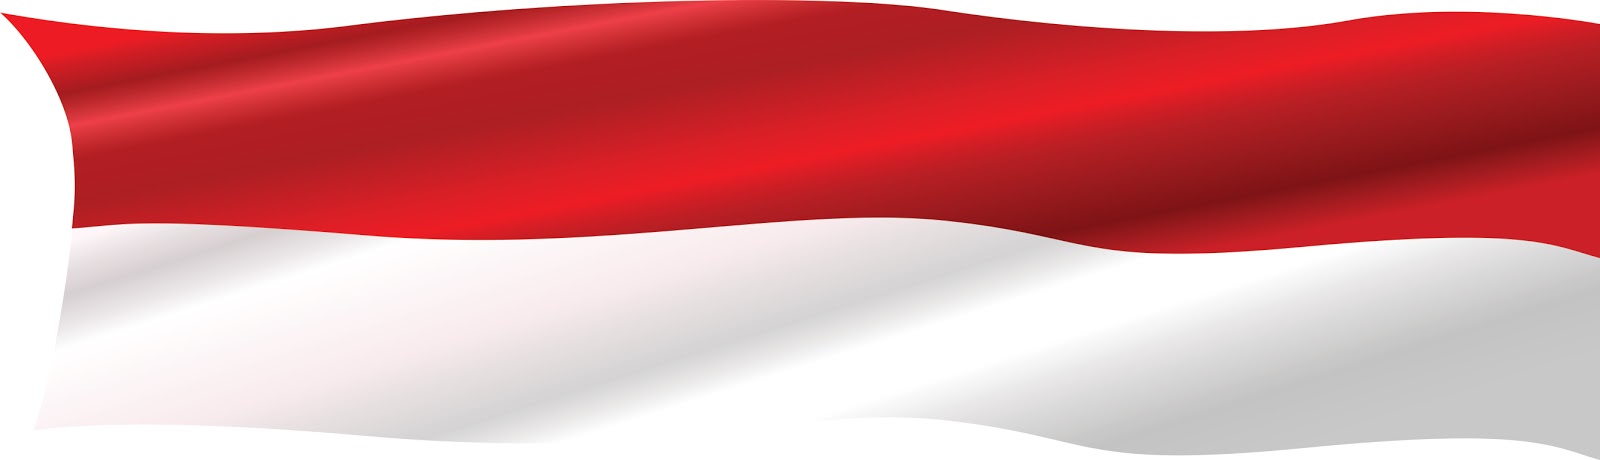 Bendera Merah Putih Vektor Free Download - Agen87